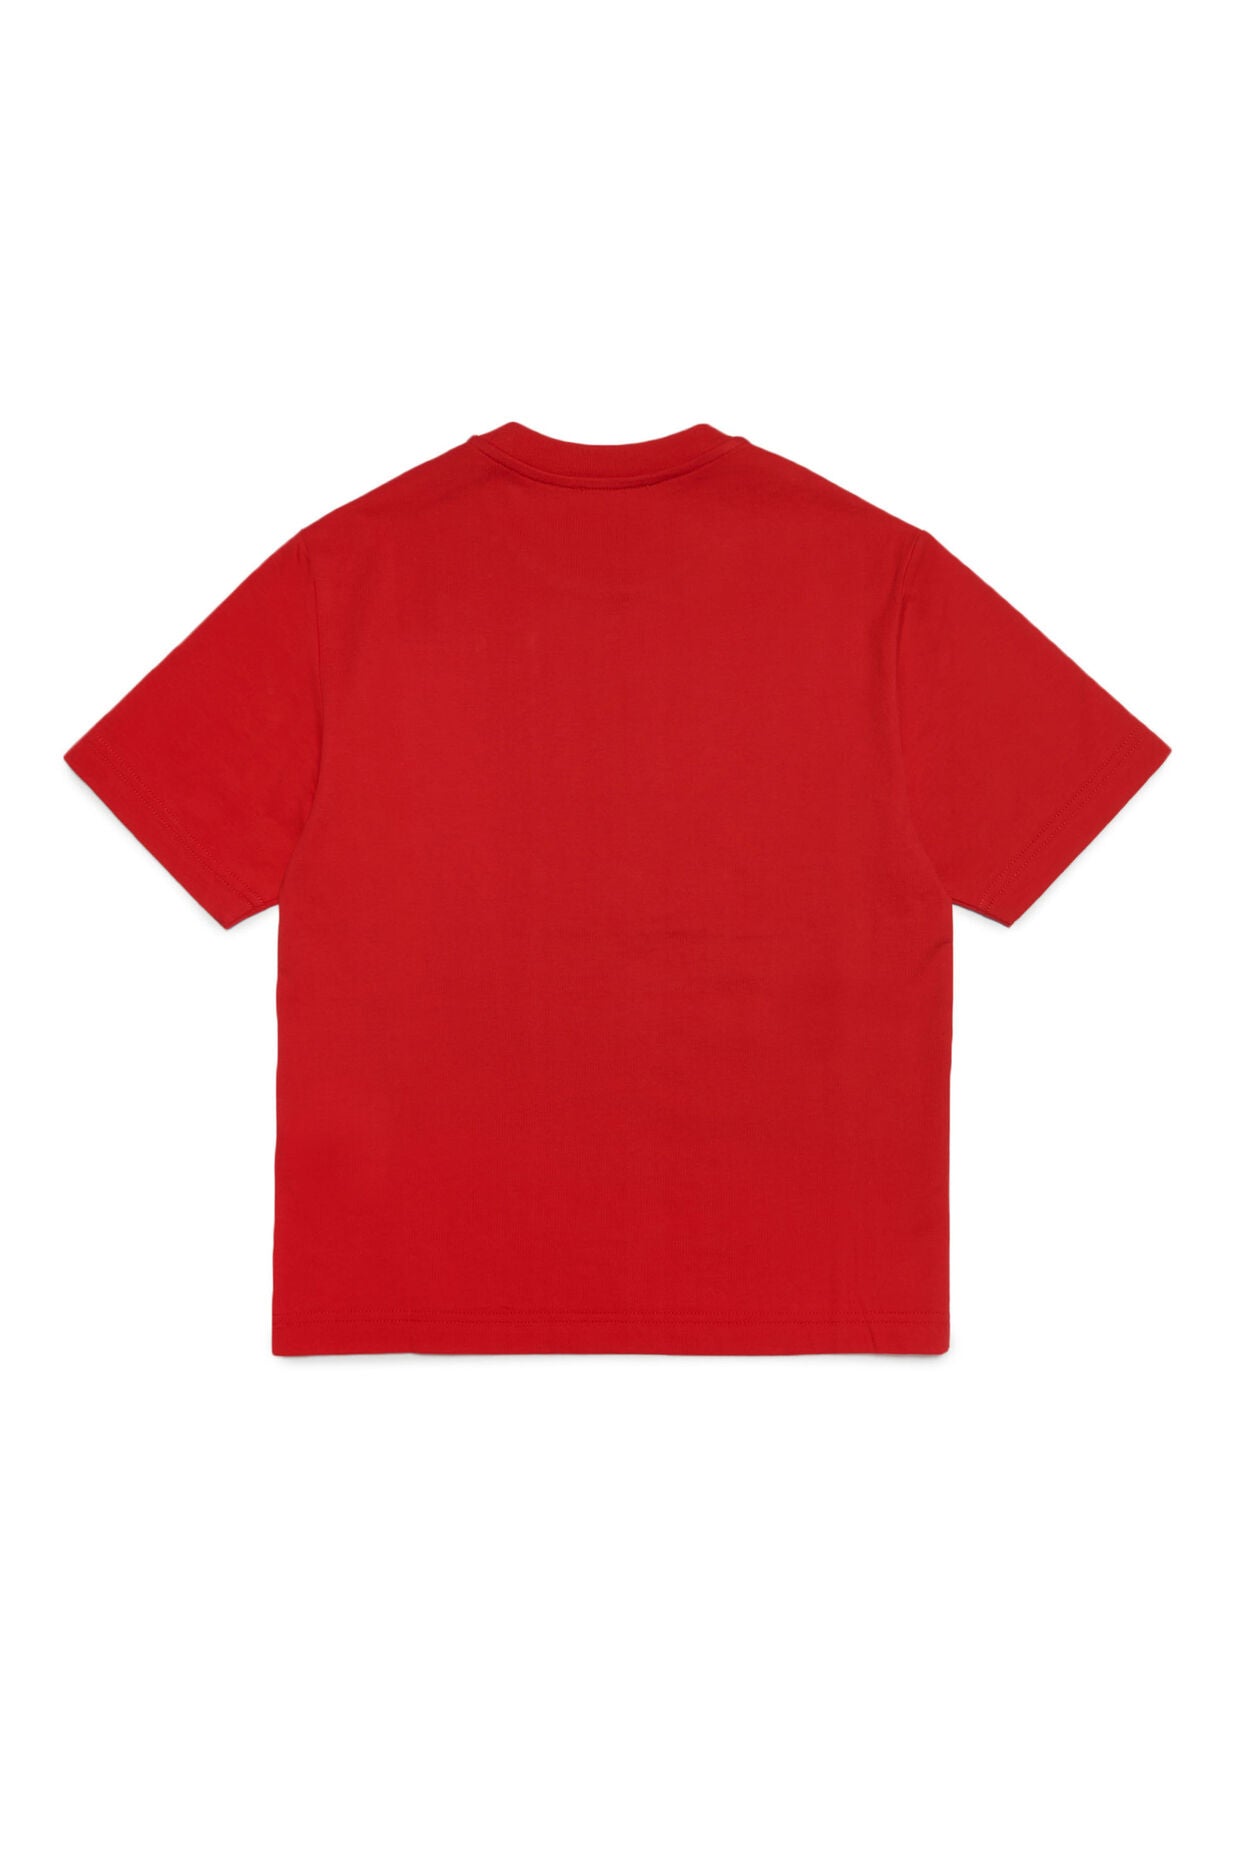 DIESEL T-shirt Bambino J01131-KYAR1 Carnation Red